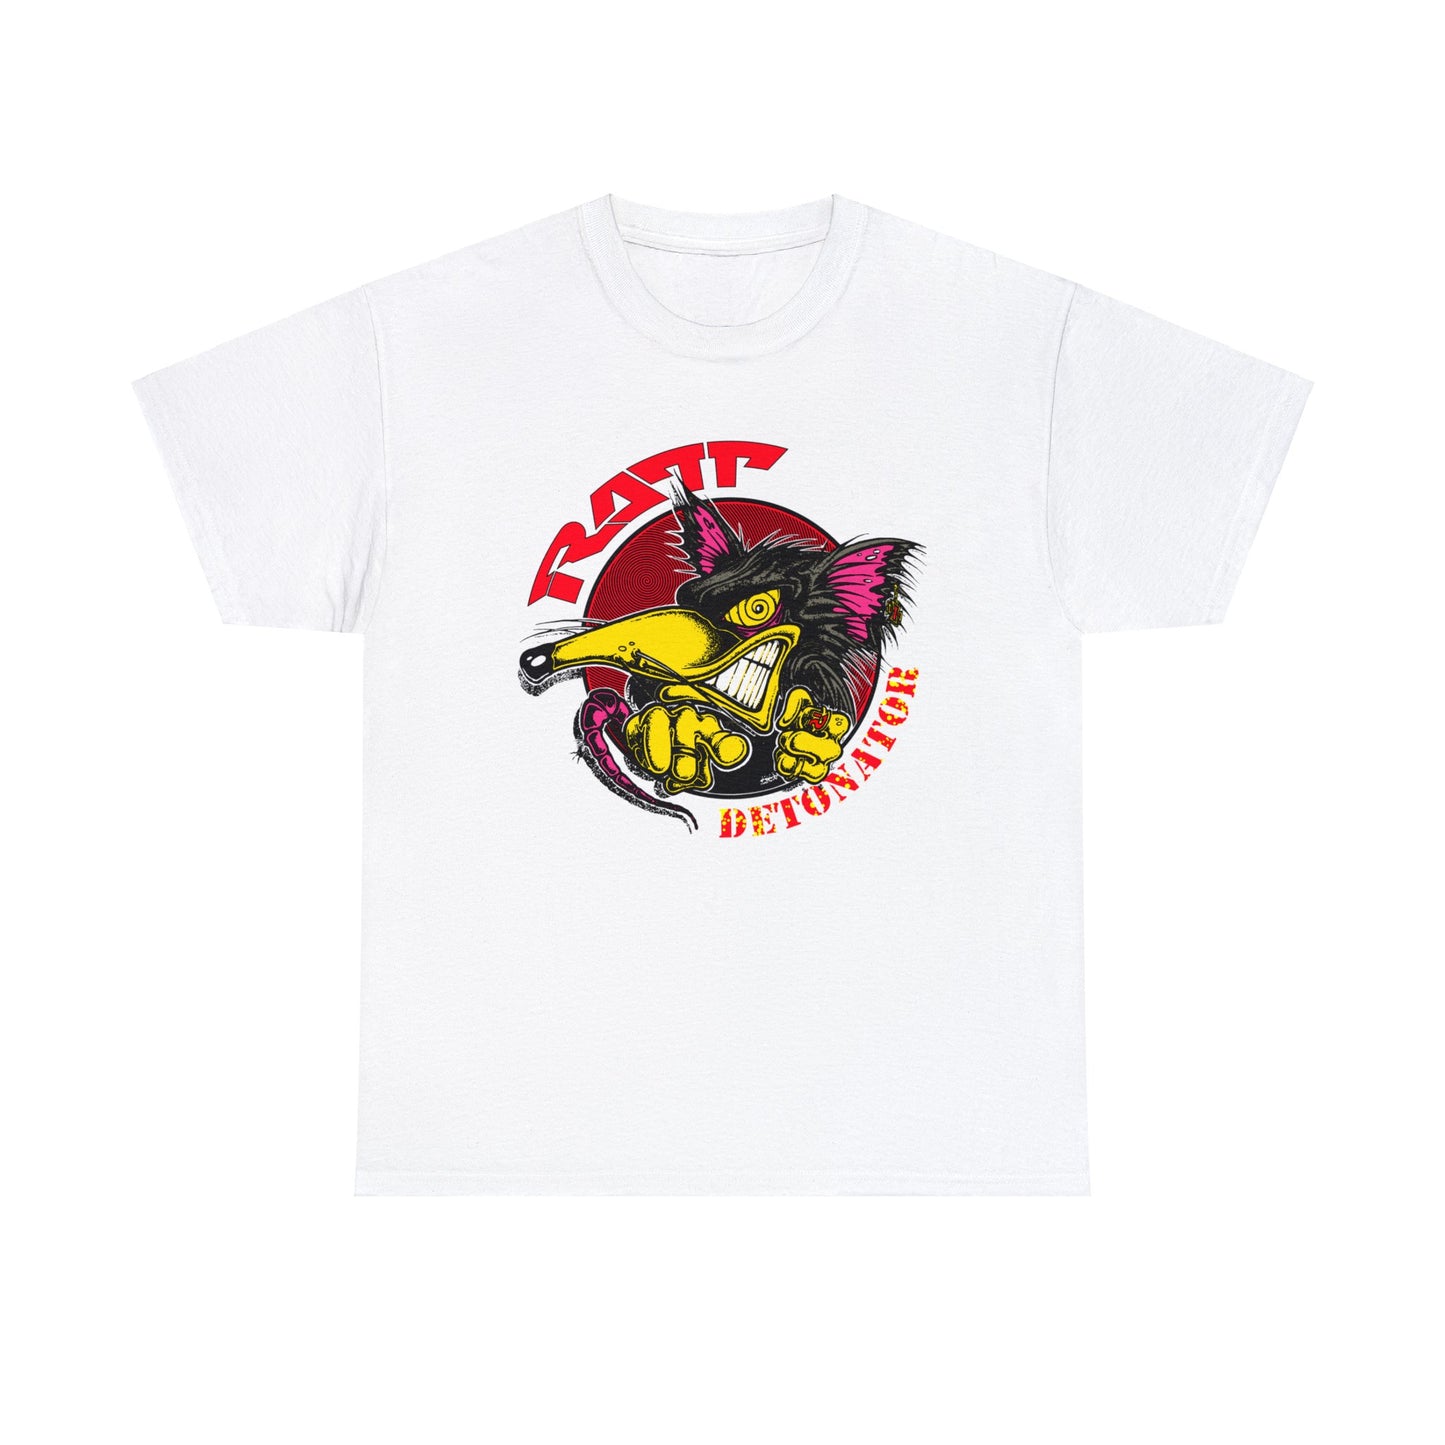 Ratt Detonator Tour 1990-1991 T-shirt for Sale